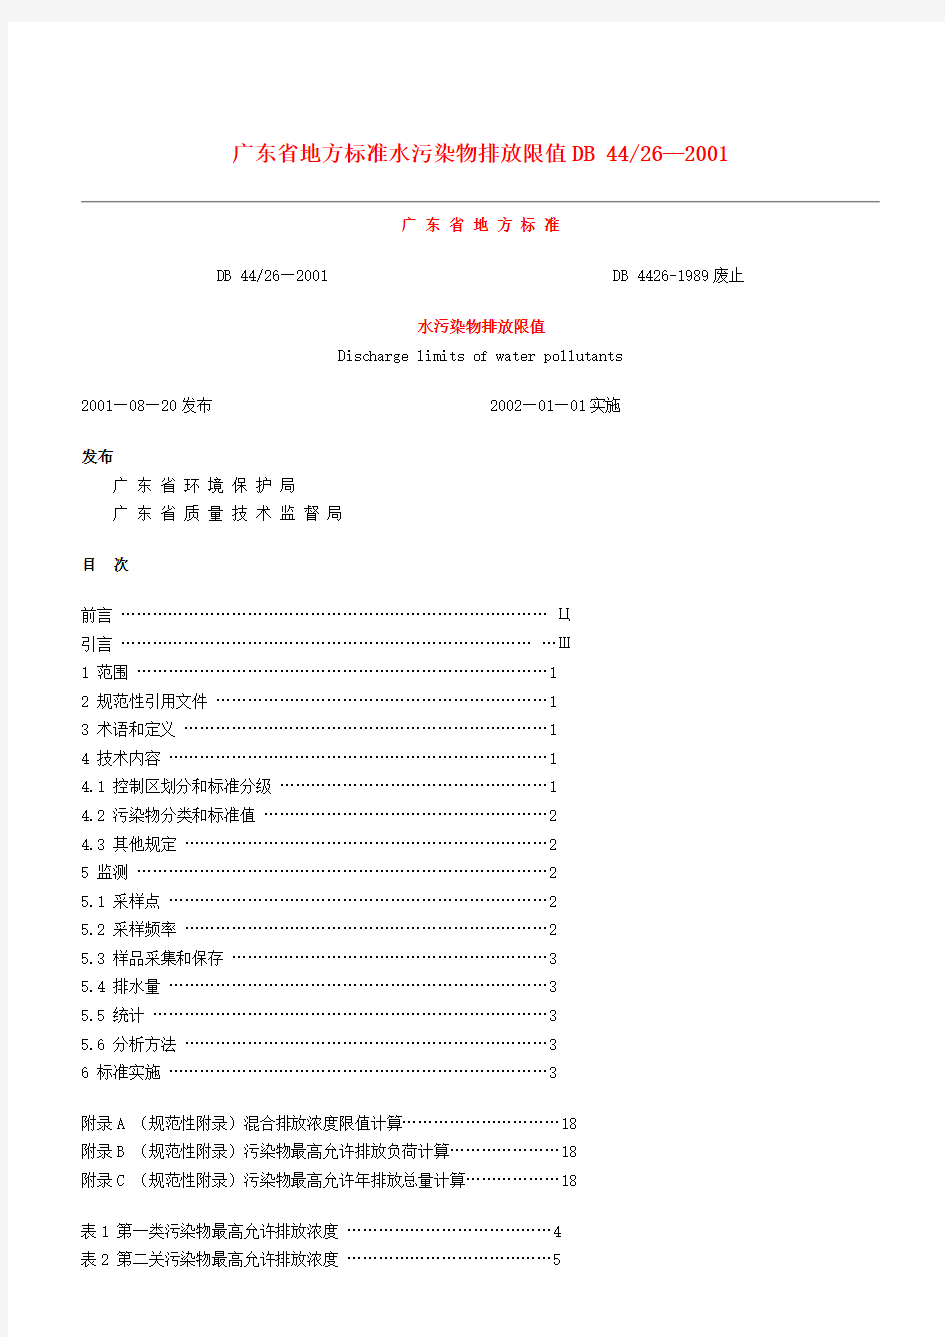 广东省地方标准水污染物排放限值DB4426-2001